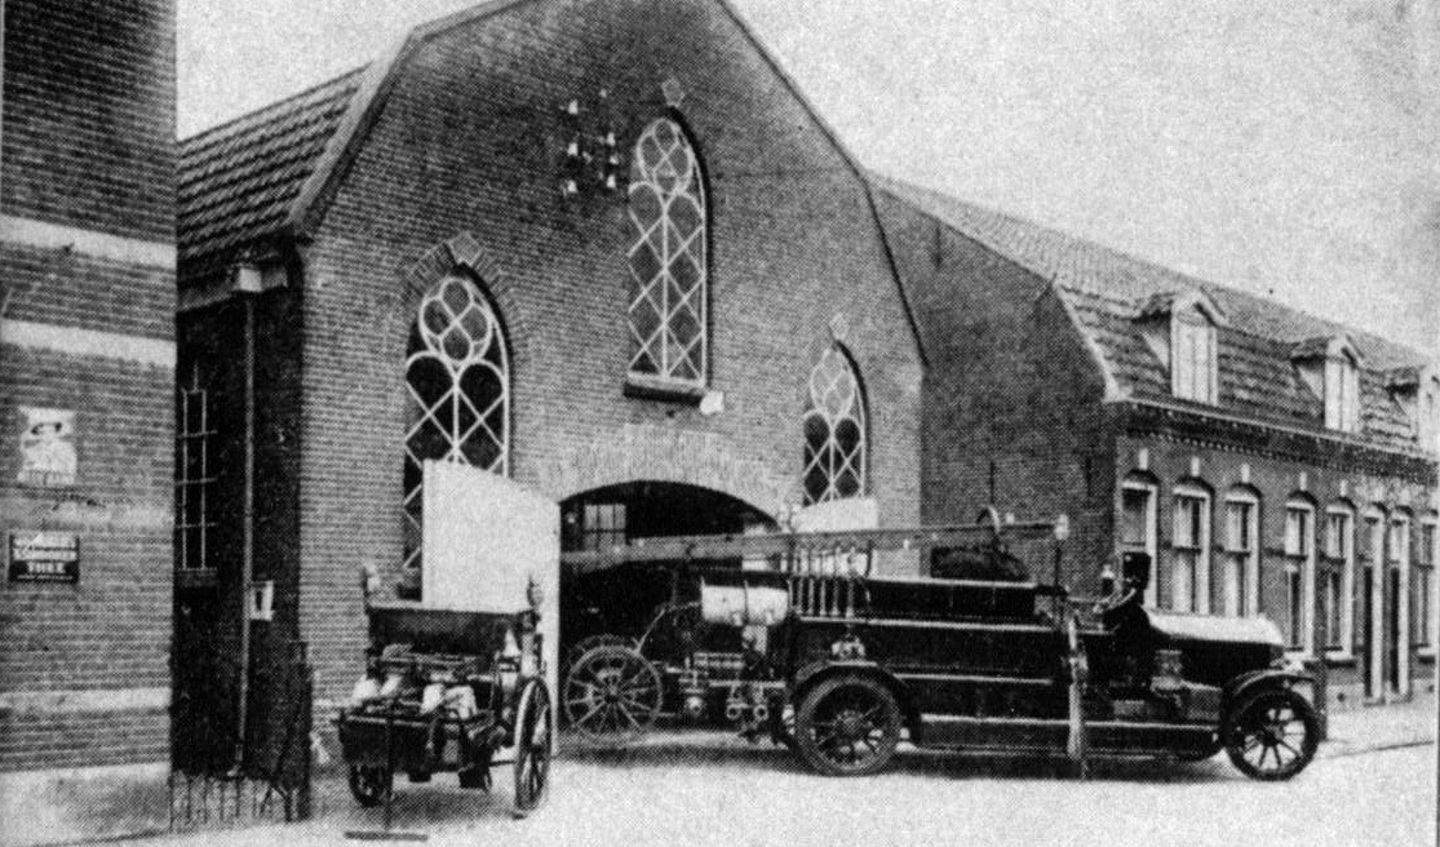 Het tot Brandweerkazerne verbouwde voormalige kerkgebouw, In de voorgevel (aan de Nieuwstraat) zijn nog de oorspronkelijke kerkramen aanwezig en de aanpalende woningen zijn anno 2018 er ook nog. Aan de zuidzijde is de Molenkamp gerealiseerd